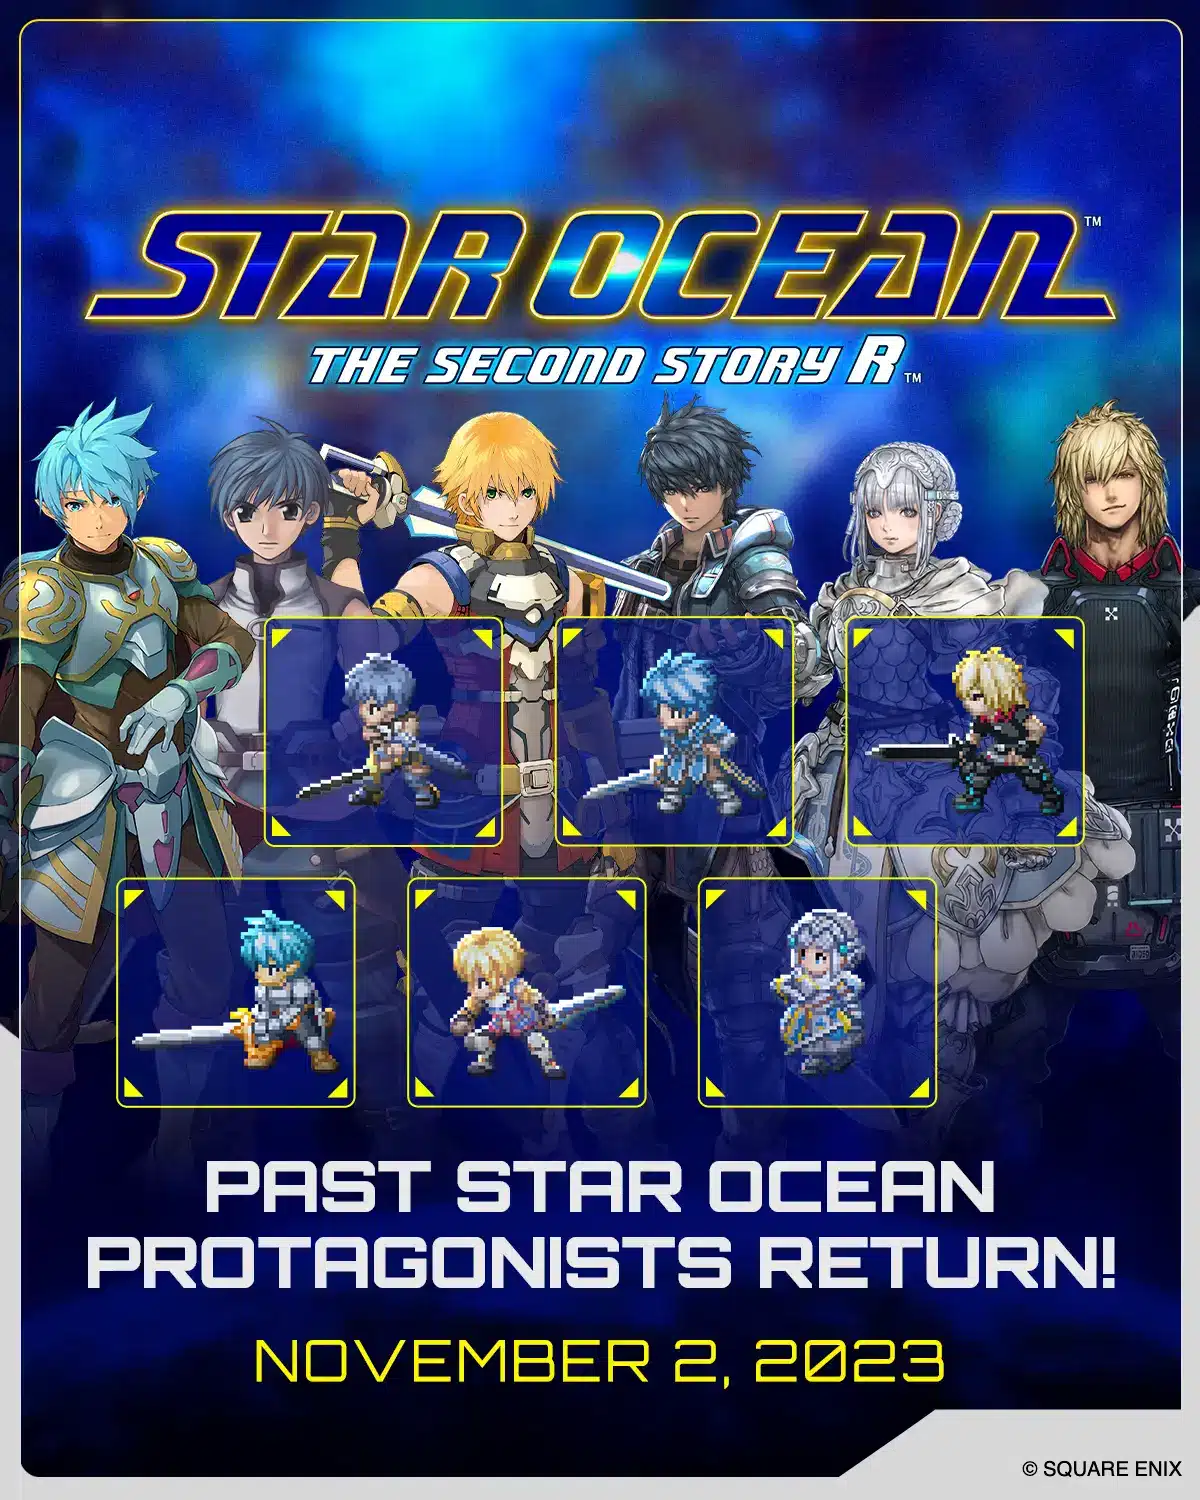 Star ocean 1